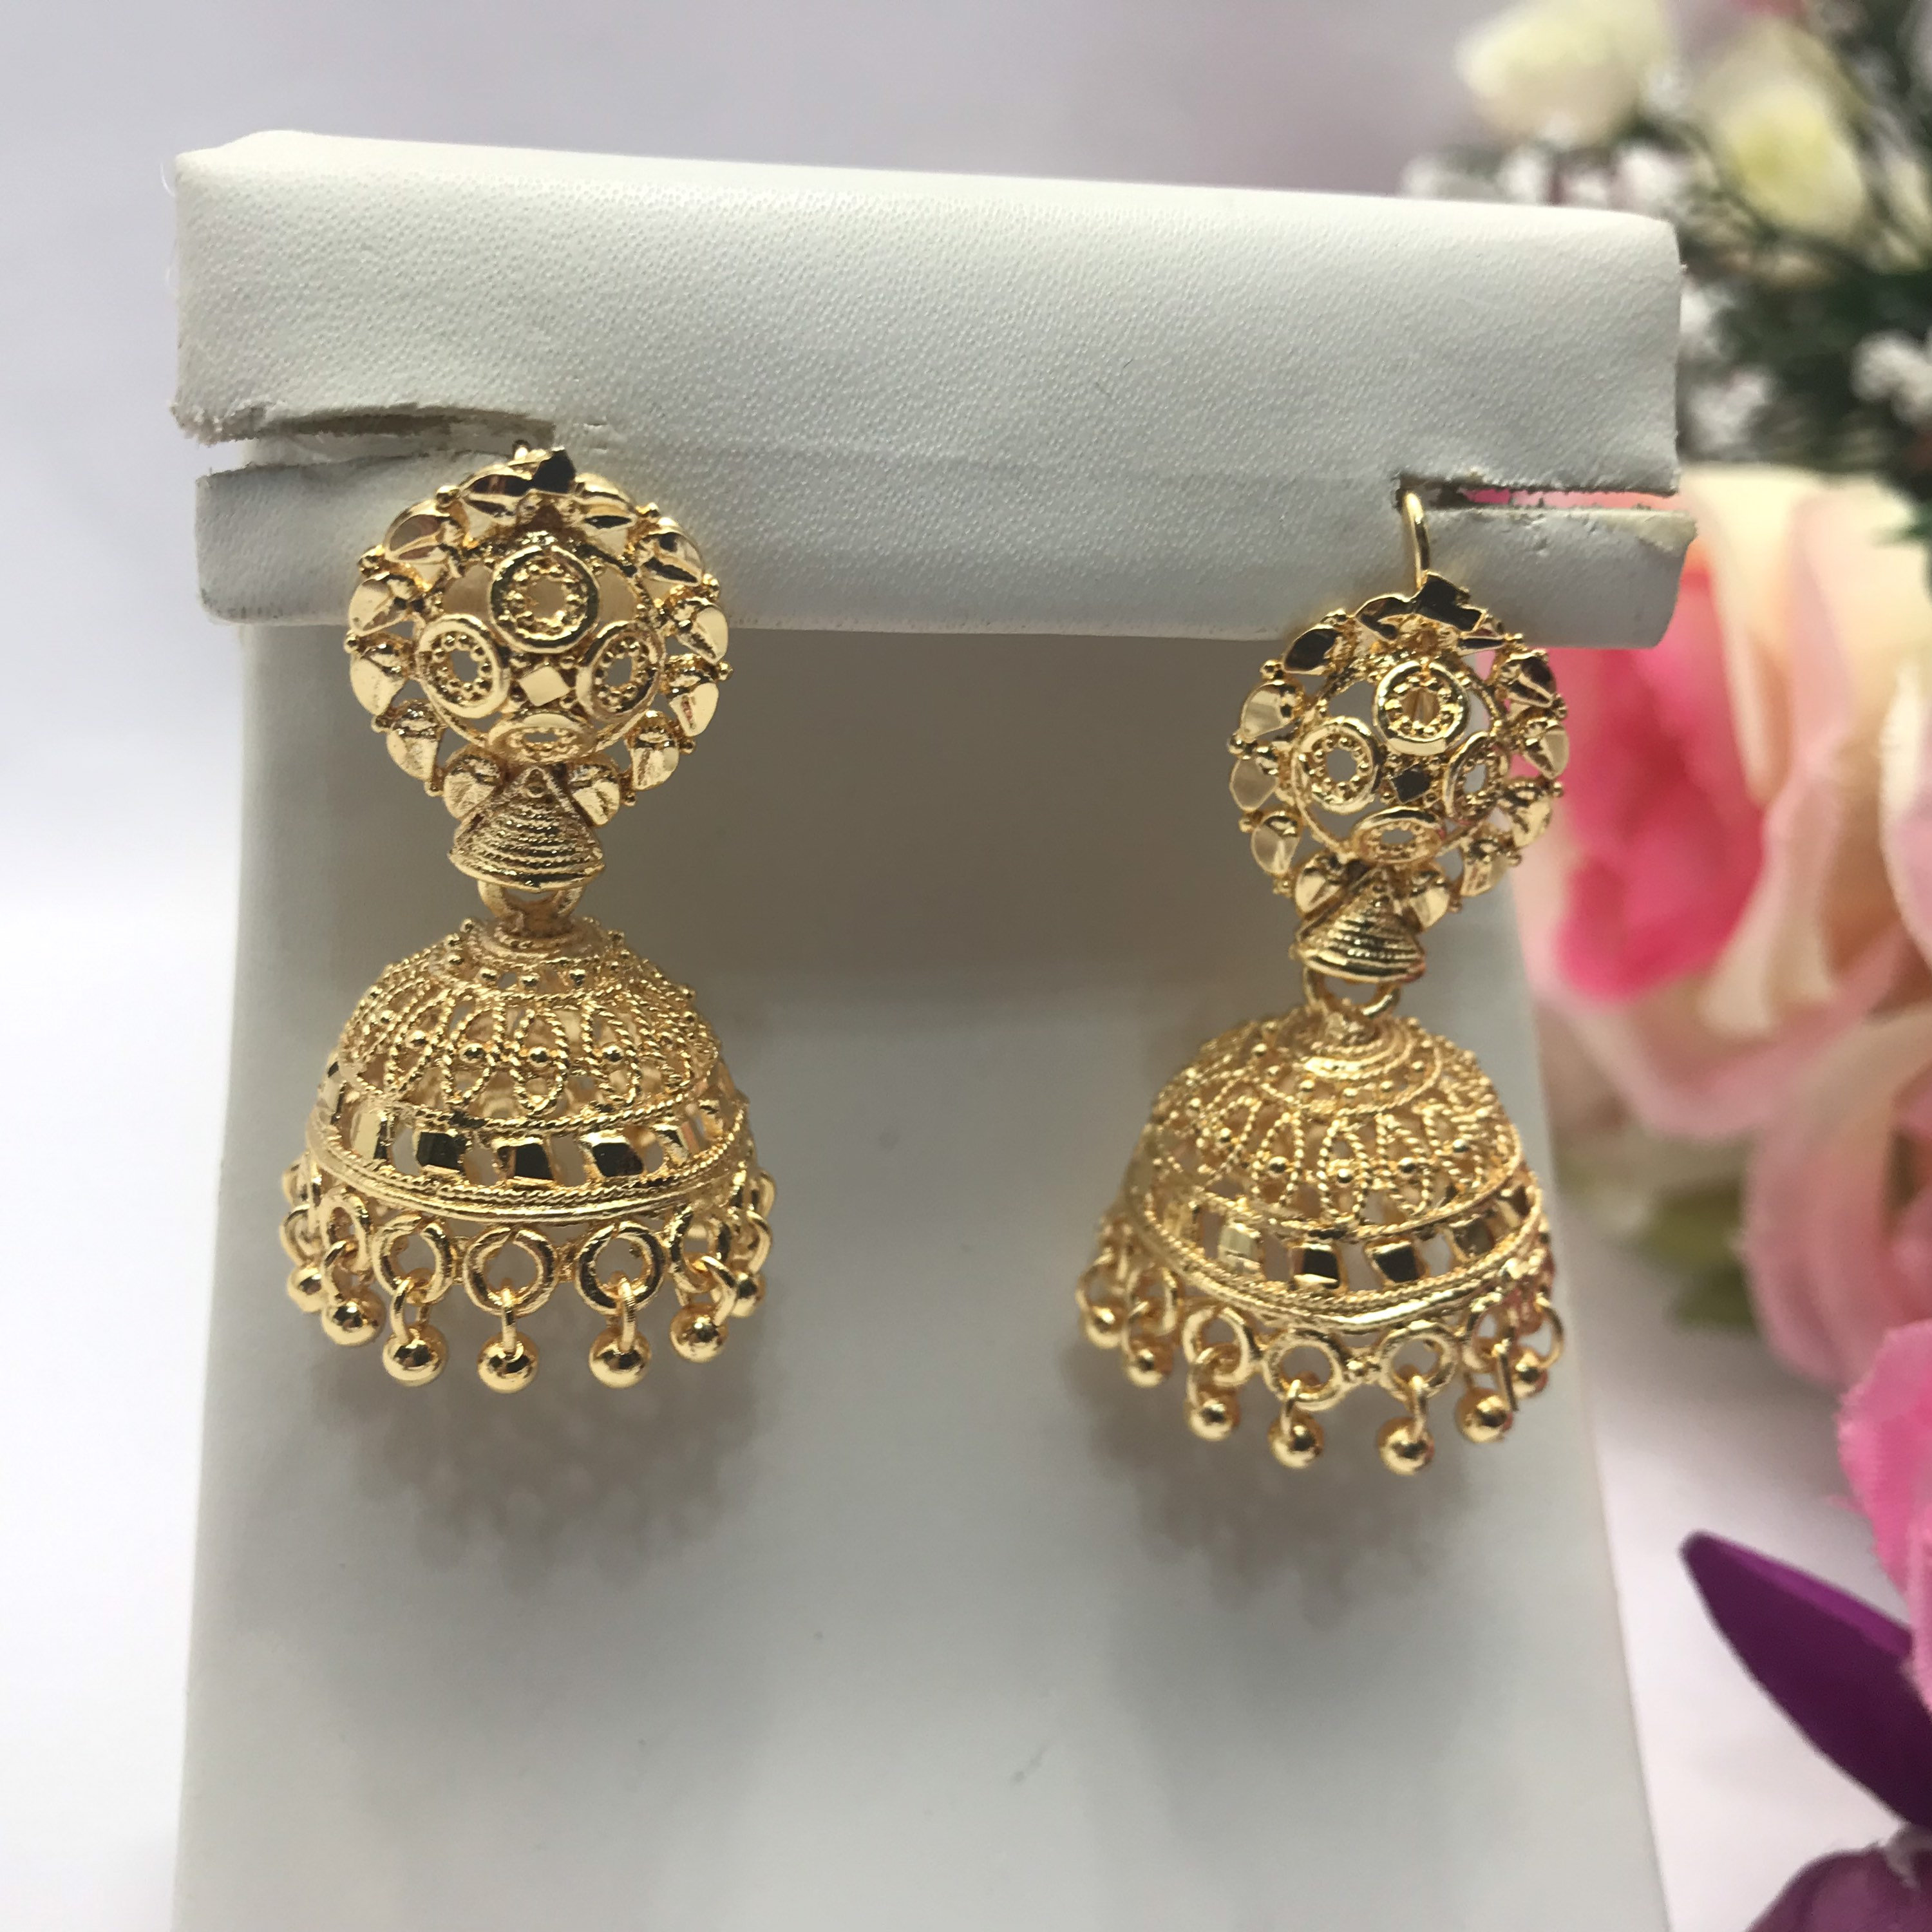 Buy Gold Plated Kundan Jhumka/ Jhumka Earrings/ Bollywood Inspired Earrings/  Pakistani Ethnic Style Earrings/ Indian Style Earrings/ Jewelry Online in  India - Etsy